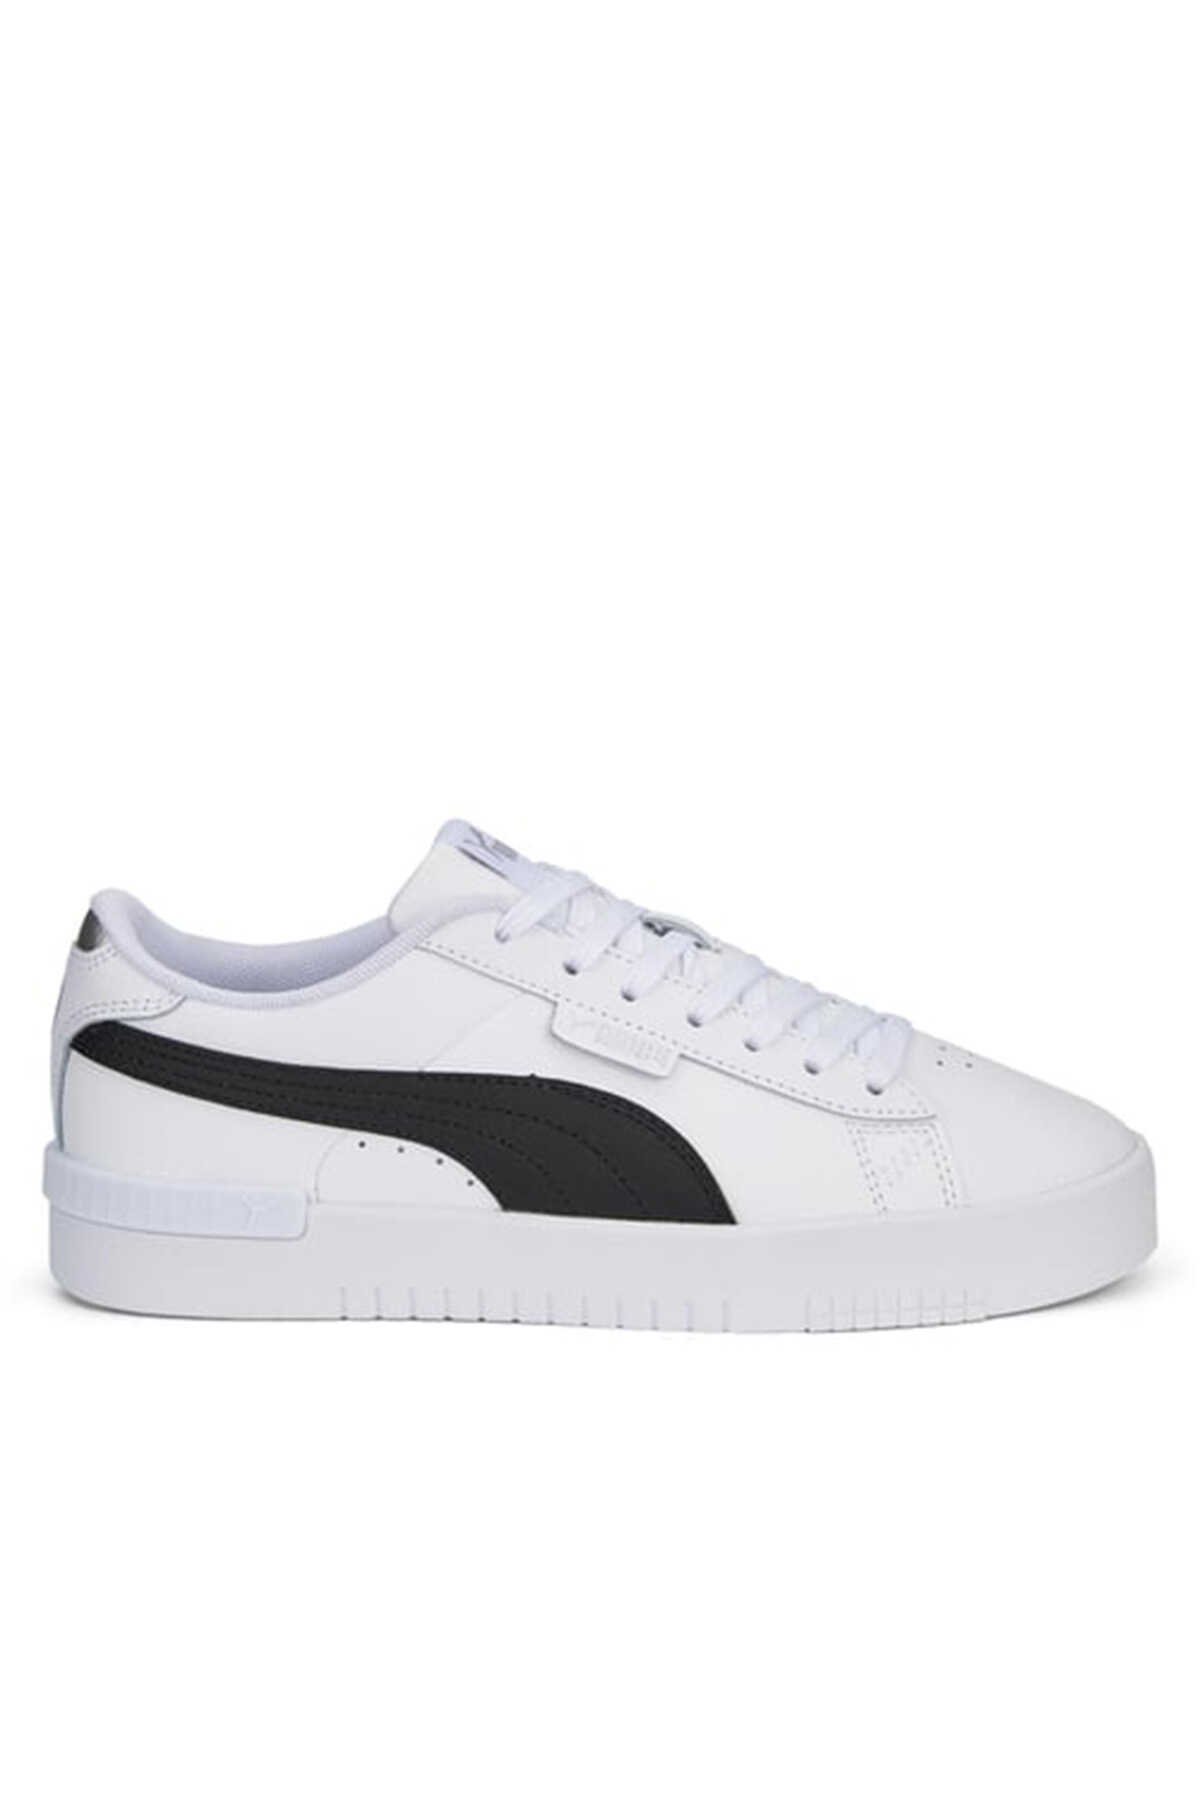 Puma - Puma Jada Renew Kadın Sneaker Ayakkabı Beyaz / Siyah